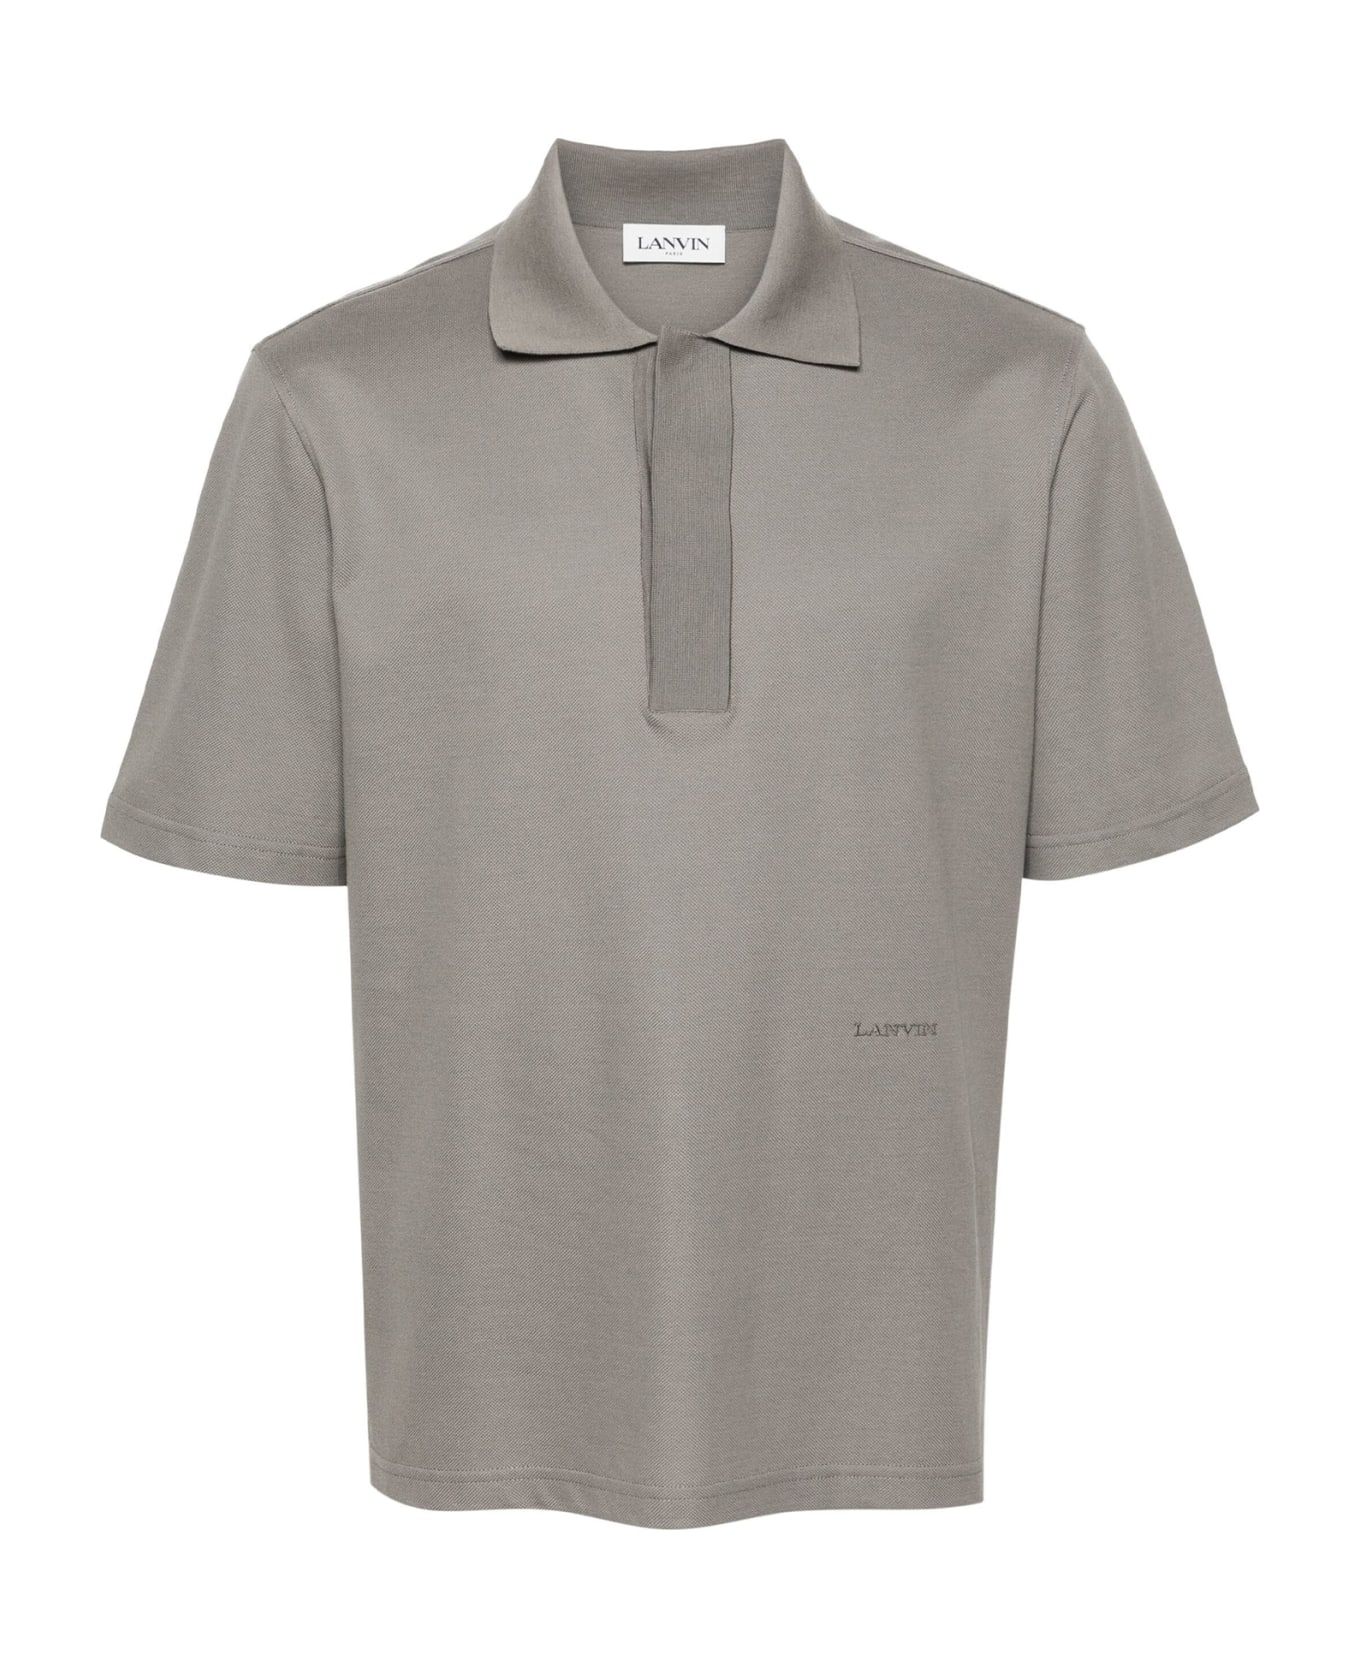 Lanvin Polo Shirt - CONCRETE